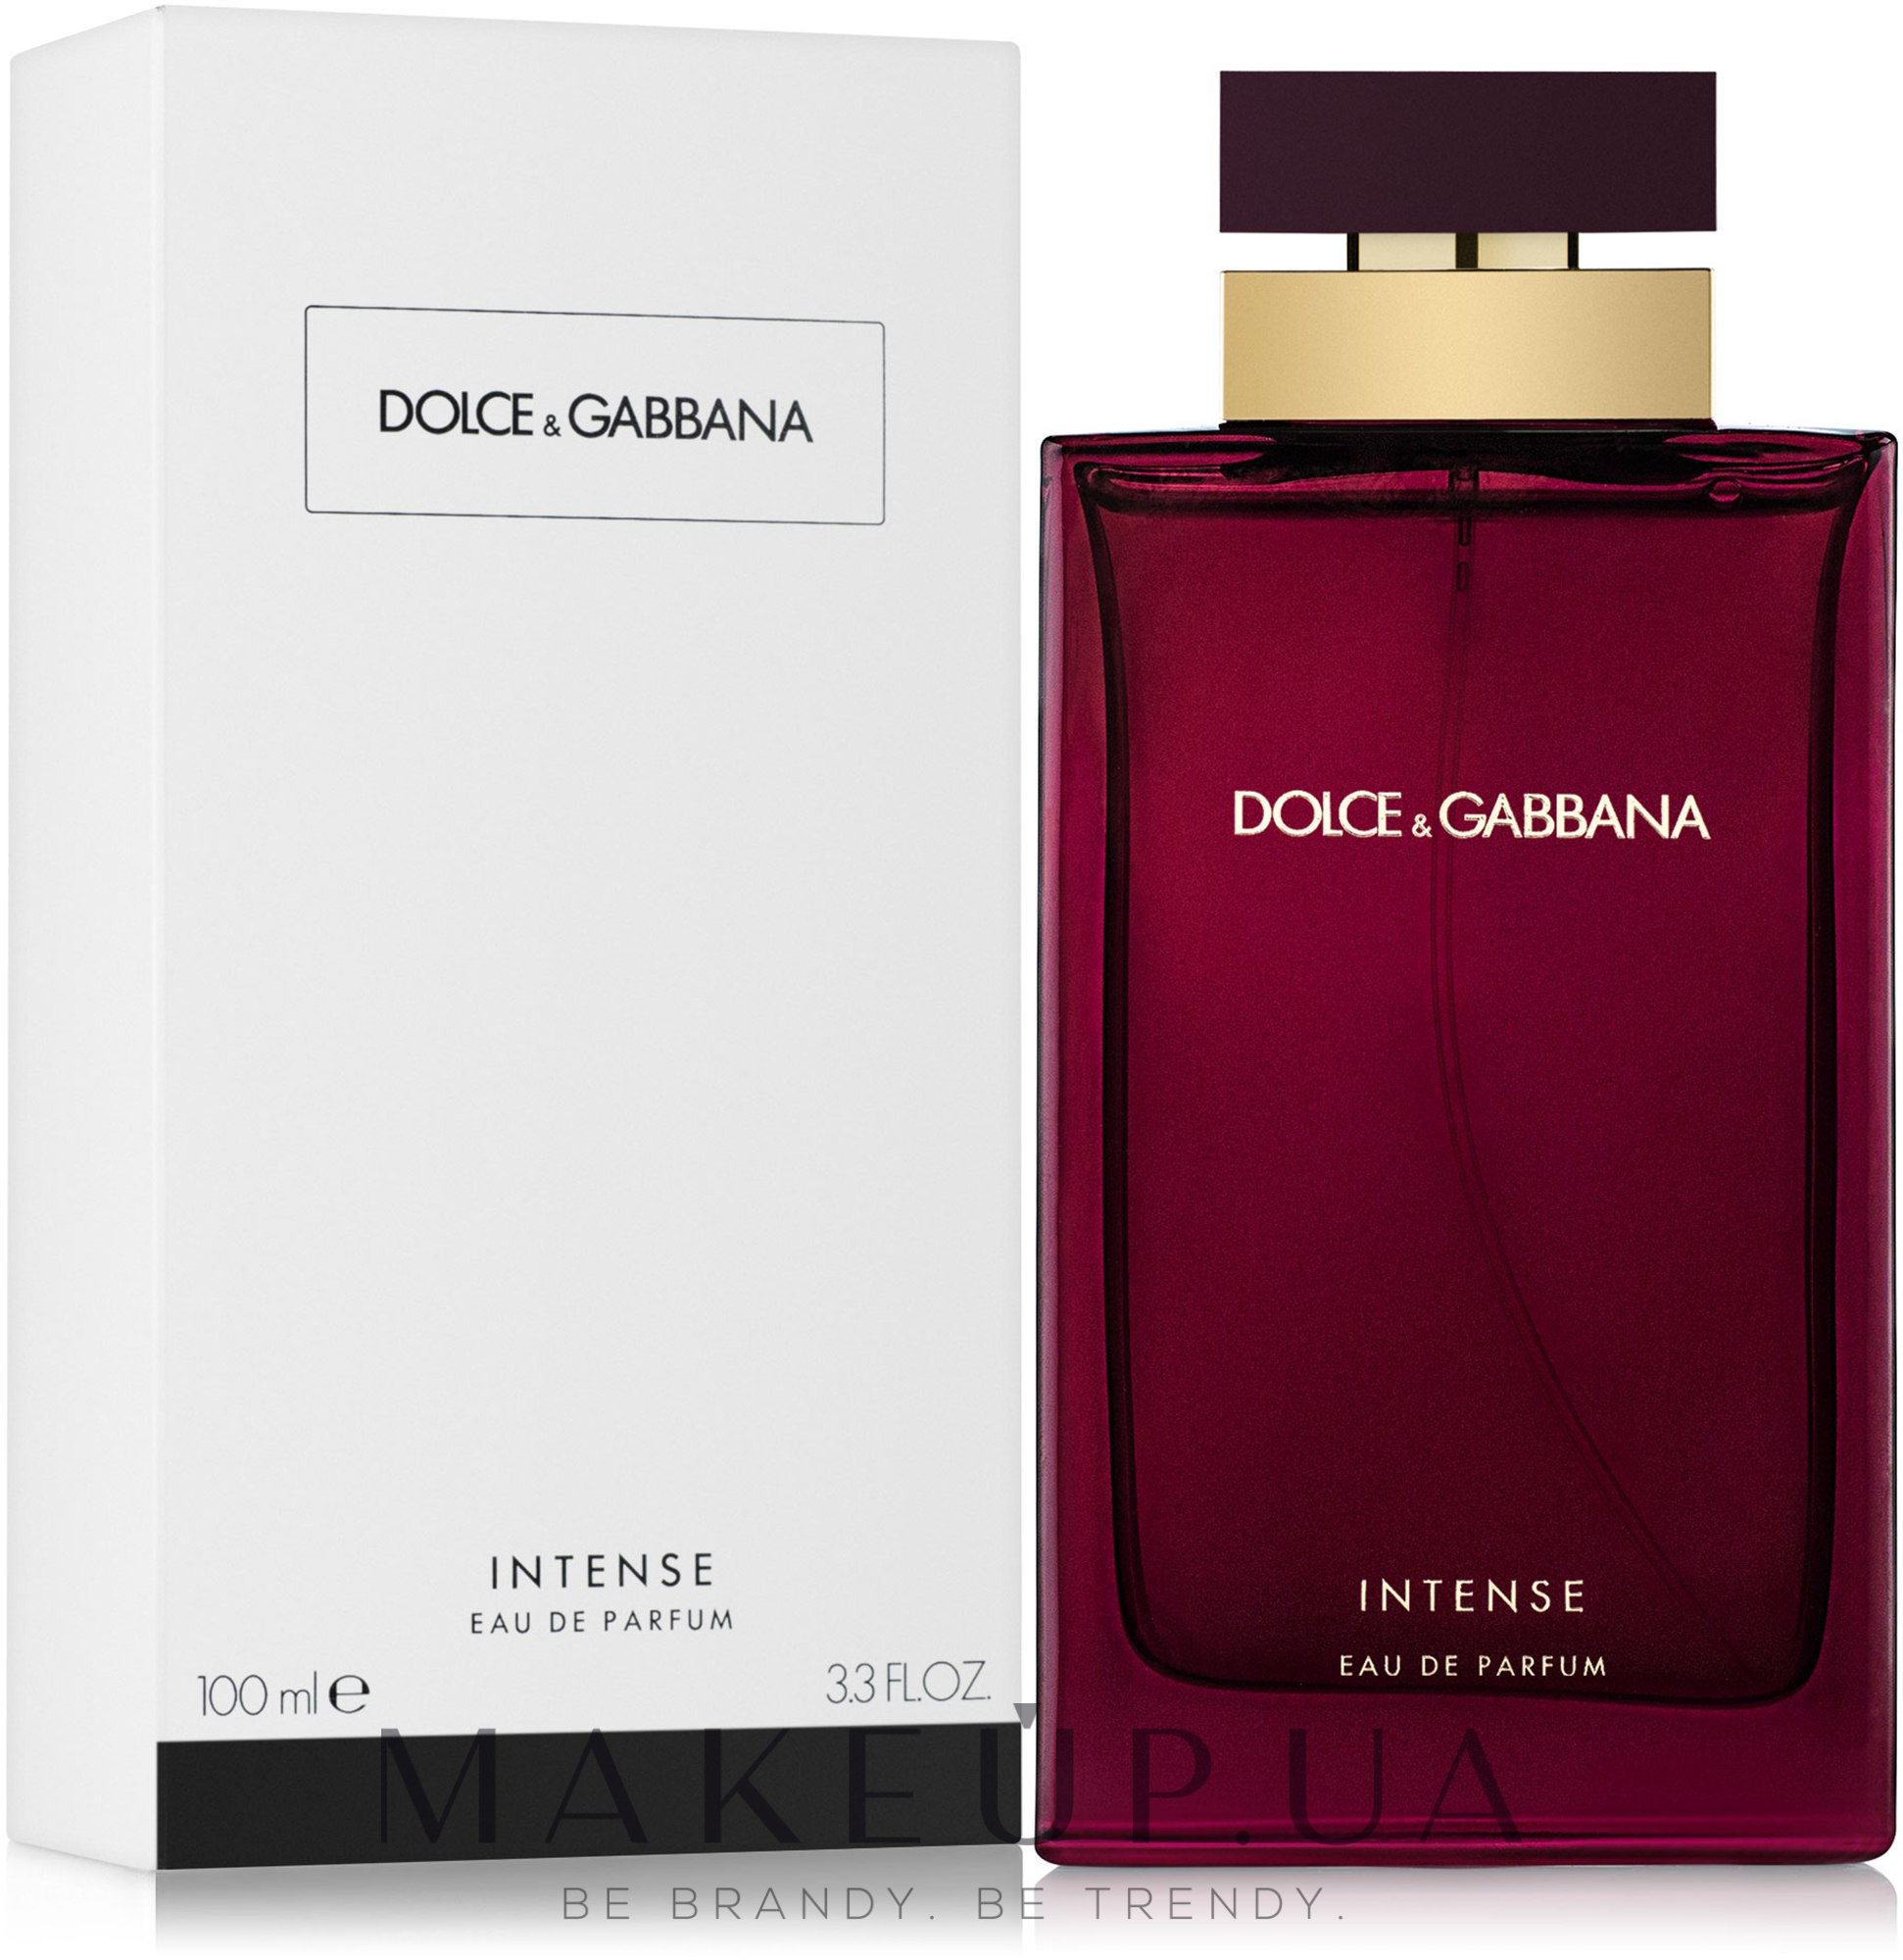 Дольче габбана интенс отзывы. Dolce Gabbana intense женские 100ml. Dolce & Gabbana pour femme intense EDP, 100 ml. Dolce Gabbana (d&g) pour femme intense 100мл. Тестер Dolce Gabbana pour femme 100ml.